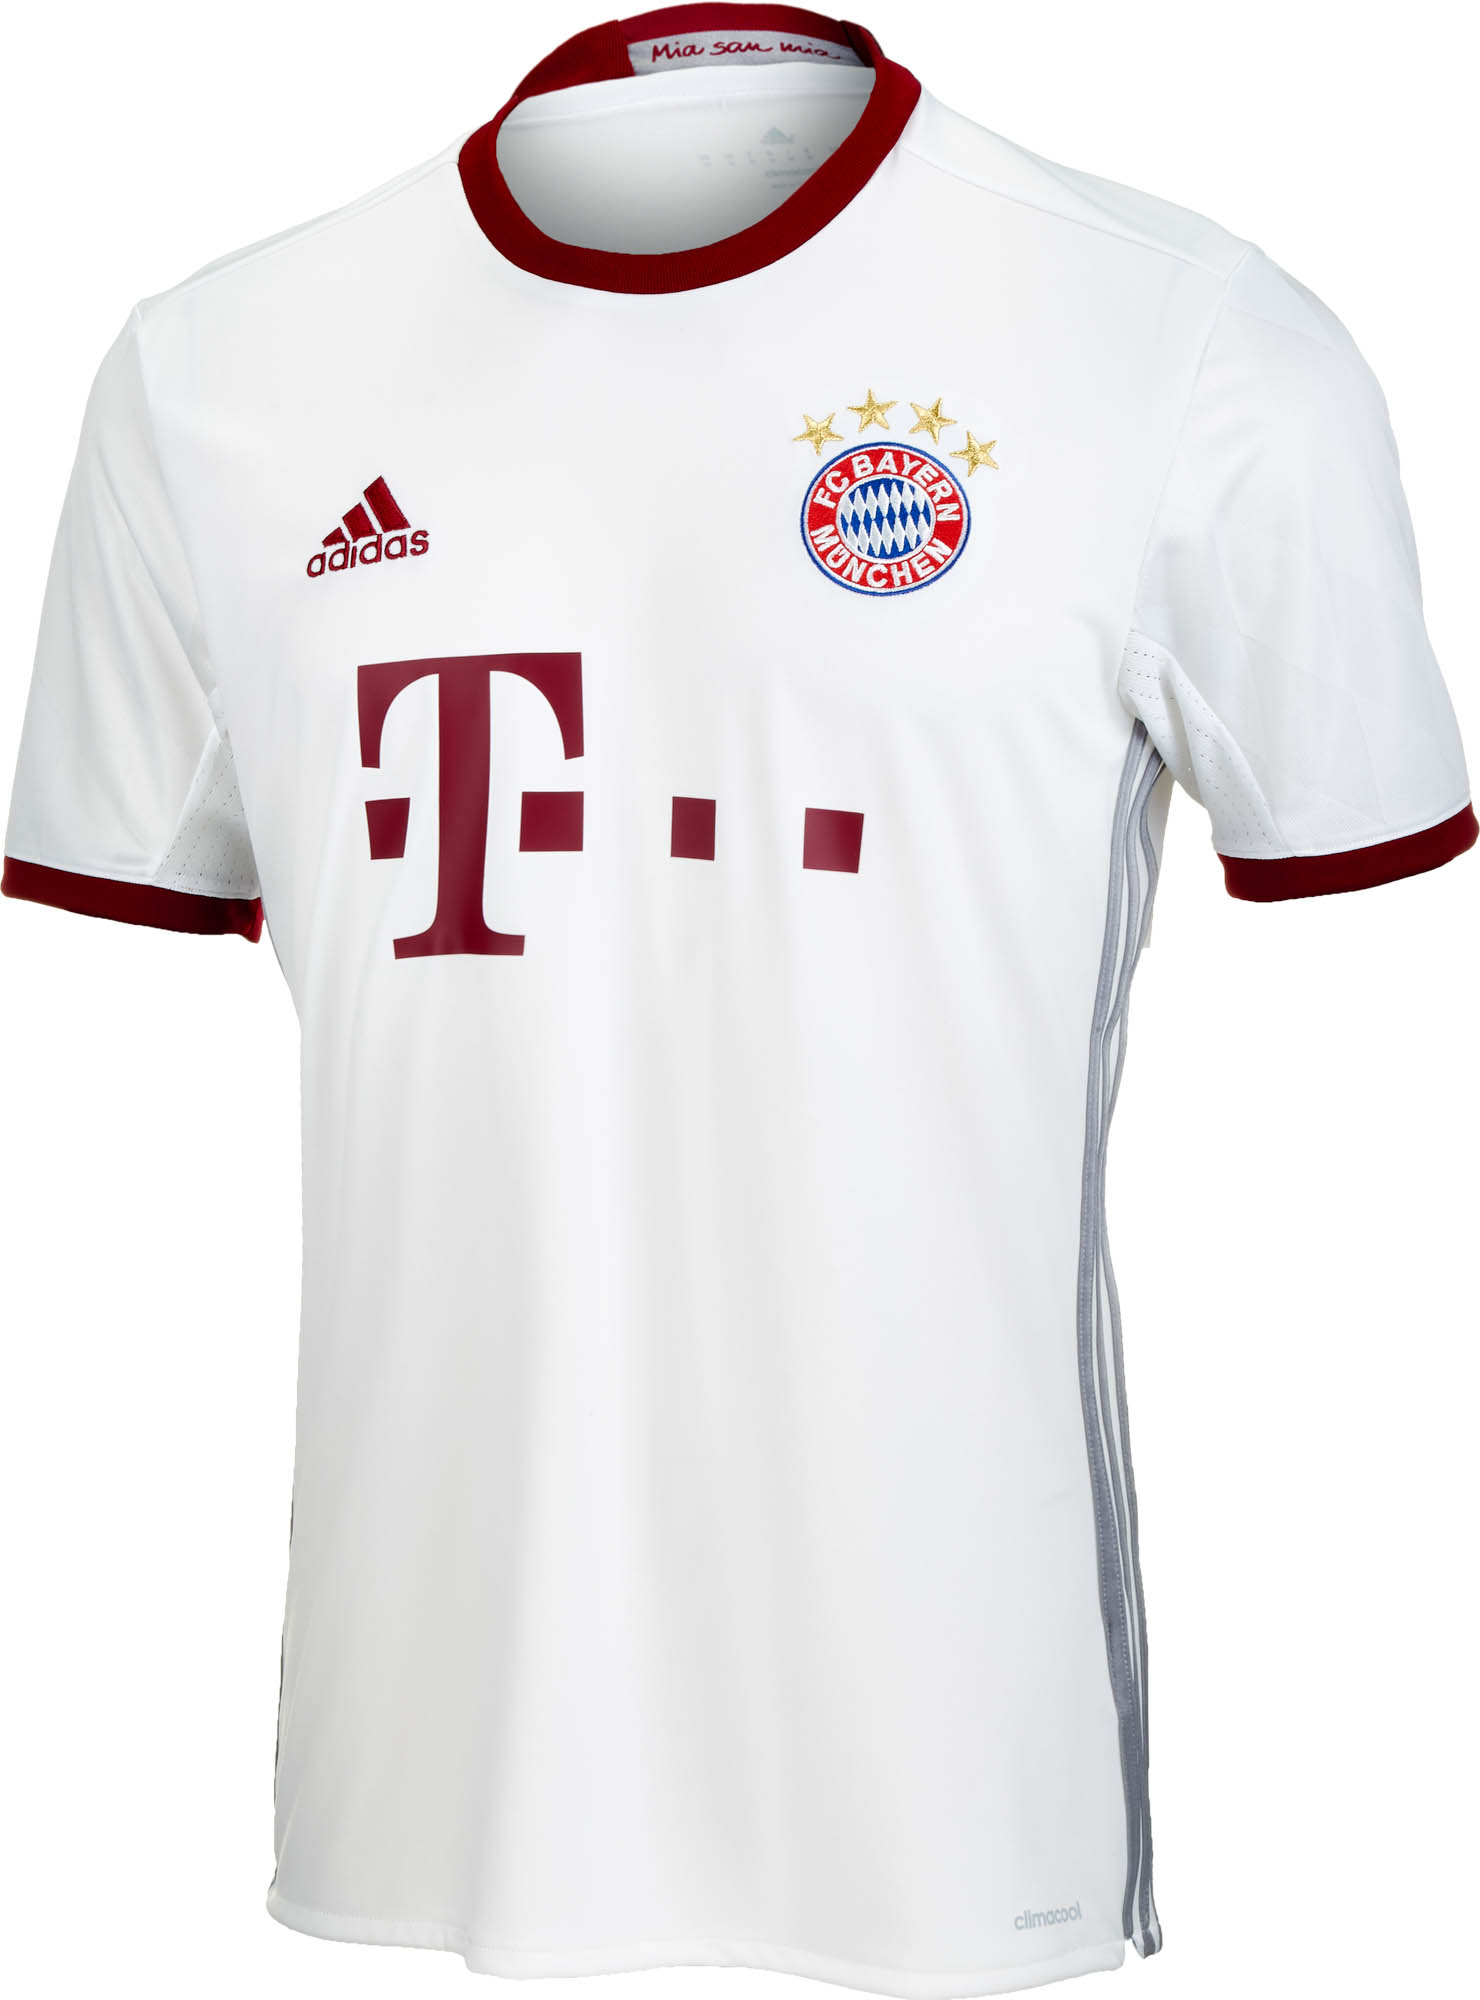 adidas Munich 3rd Jersey - Bayern Munich Soccer Jerseys